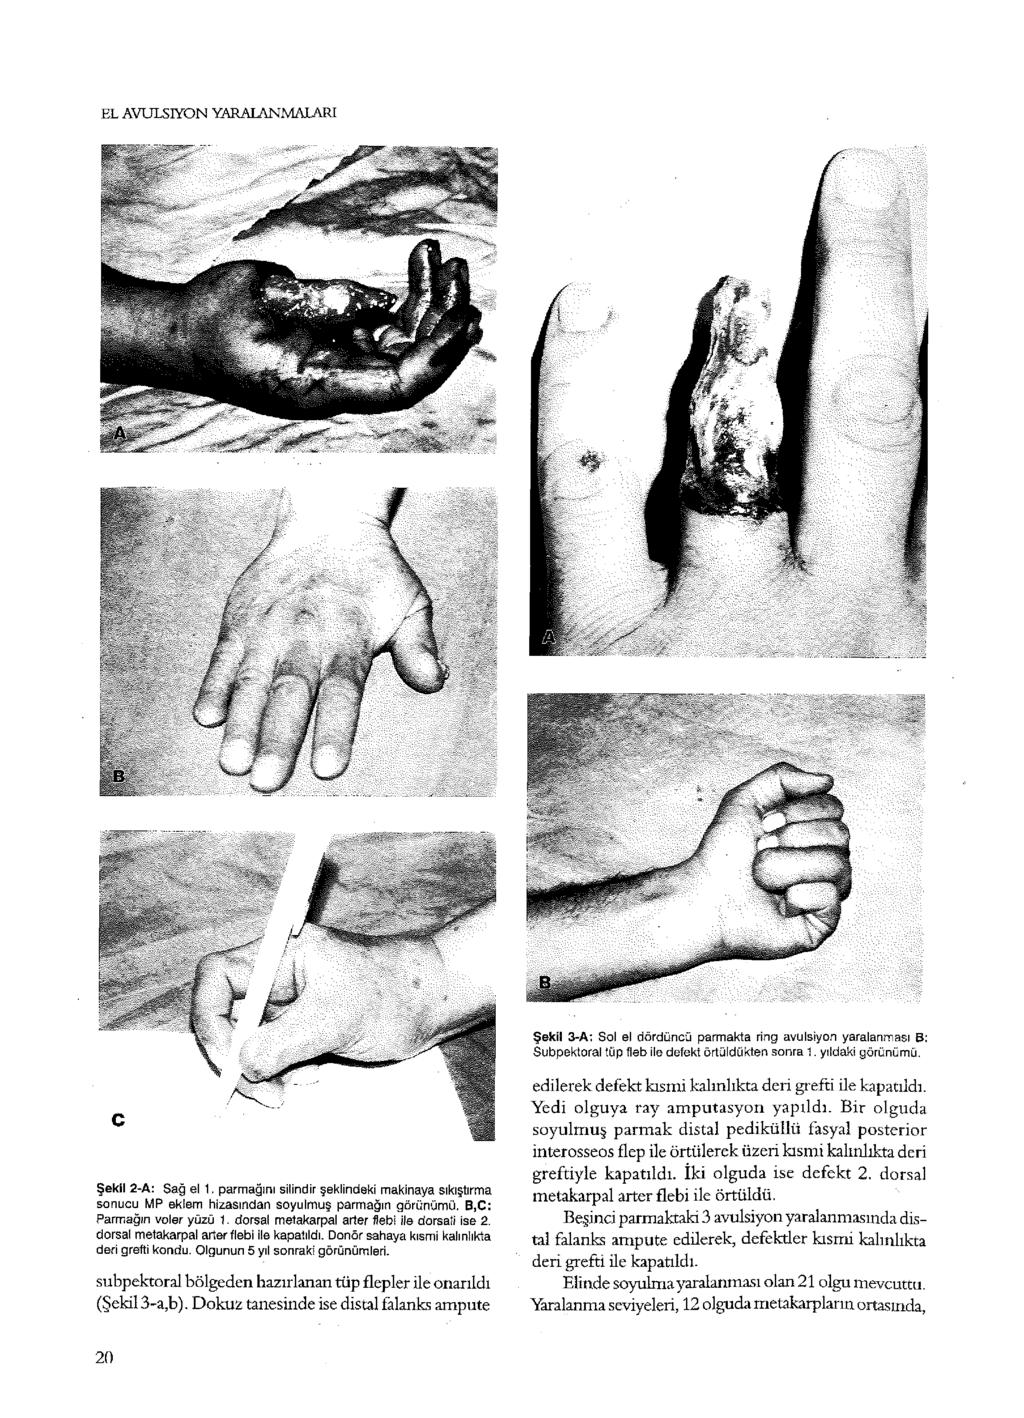 EL AVULSIYON YARALANMALARI Şekil 3-A: Sol el dördüncü parmakta ring avulsiyon yaralanması B: Subpektoral tüp fleb ile defekt örtüldükten sonra. yıldaki görünümü. Şekil 2-A: Sağ el.